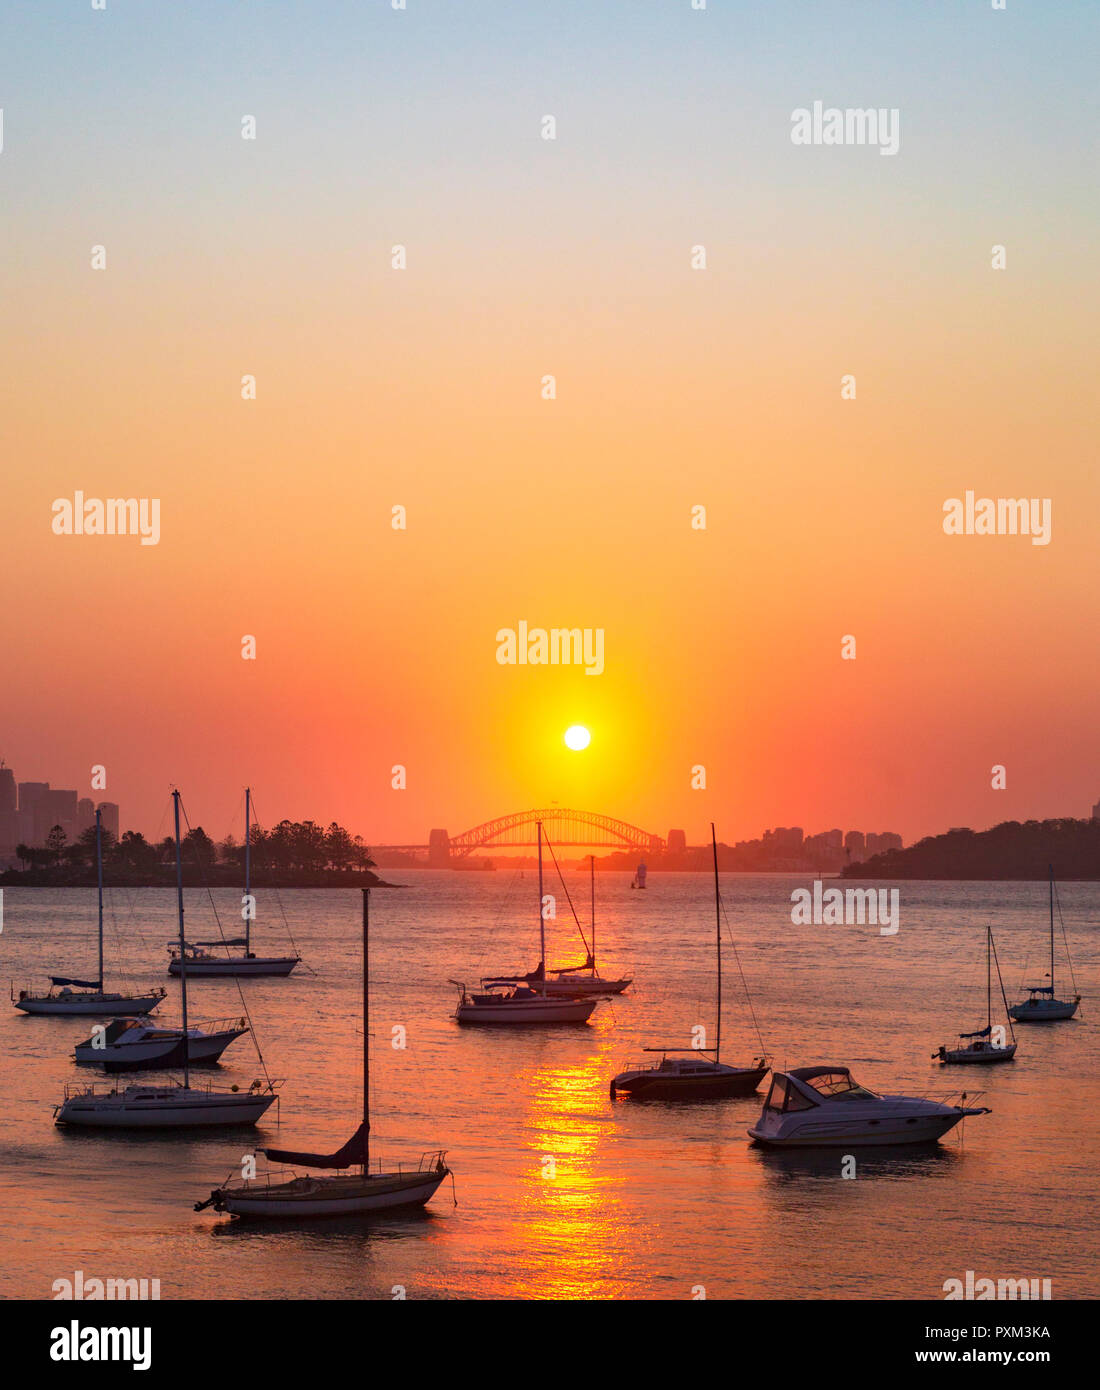 Ein schöner Sonnenuntergang über die Sydney Harbour Bridge spiegelt sich in den ruhigen Gewässern der Einsiedler Bucht in Vaucluse. Von der Eremitage Vorland gesehen zu Fuß Stockfoto